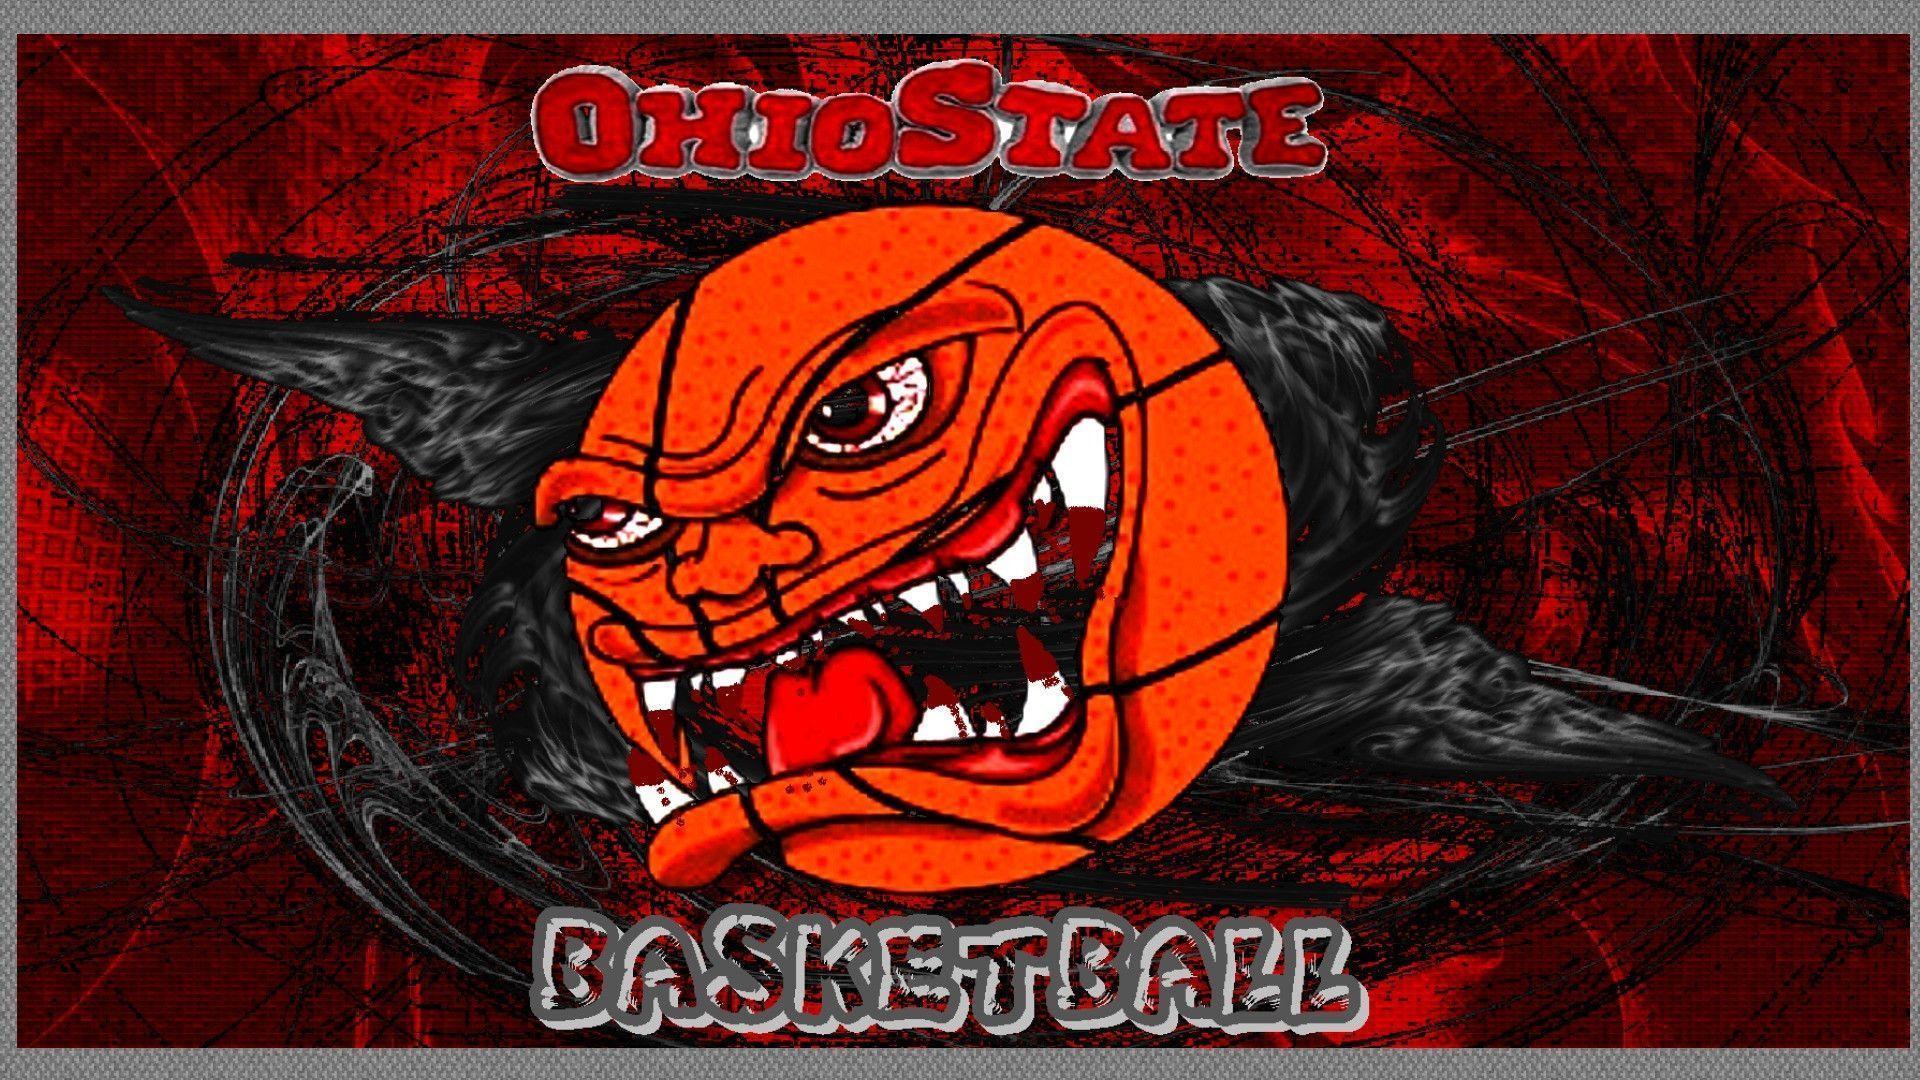 OHIO STATE BASKETBALL THE ANGRY BALL, Desktop and mobile